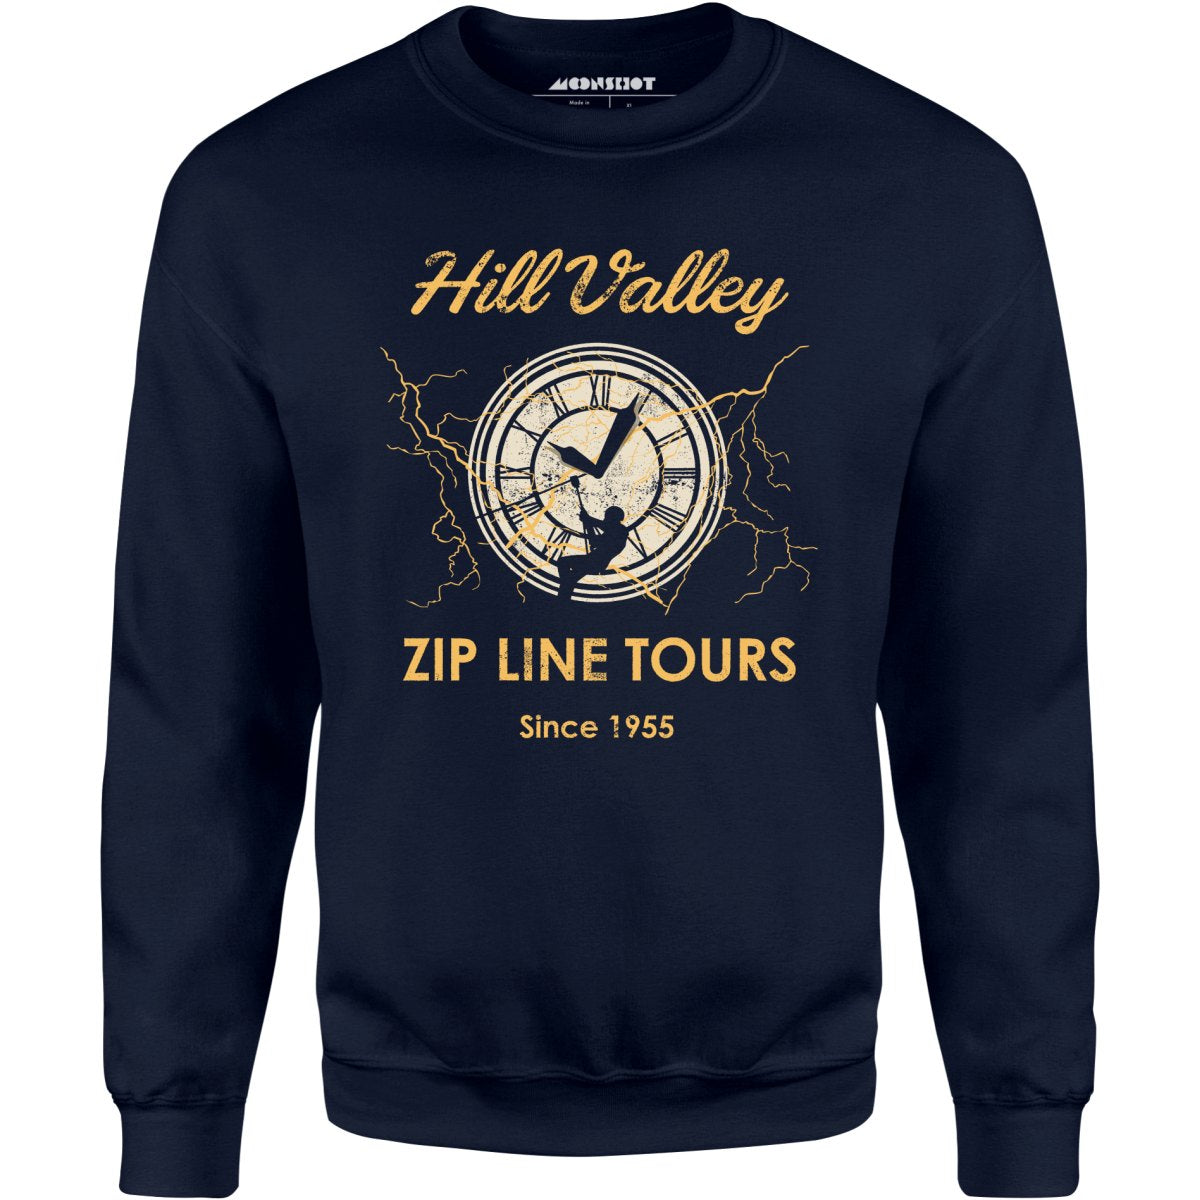 Hill Valley Zip Line Tours - Unisex Sweatshirt